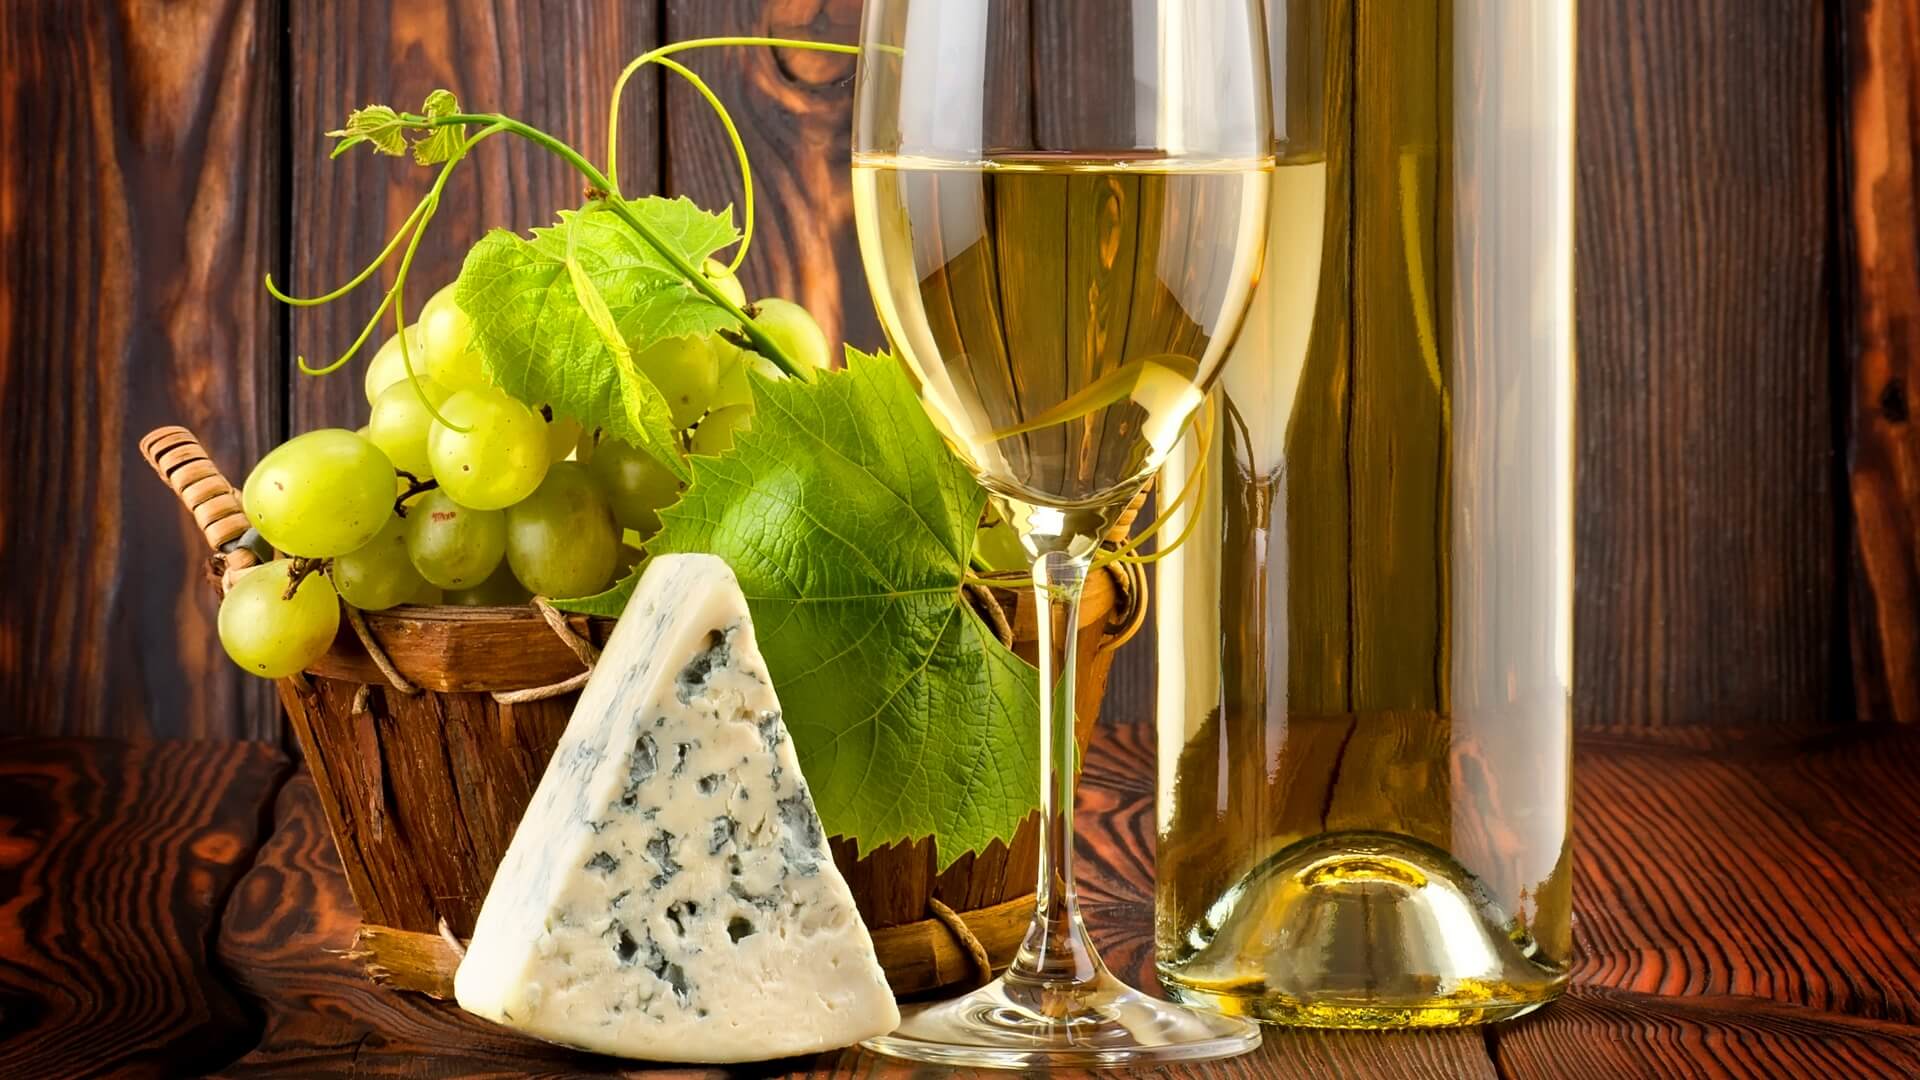 Натюрморт: бокал белого вина, корзина с ягодами и кусочек сыра